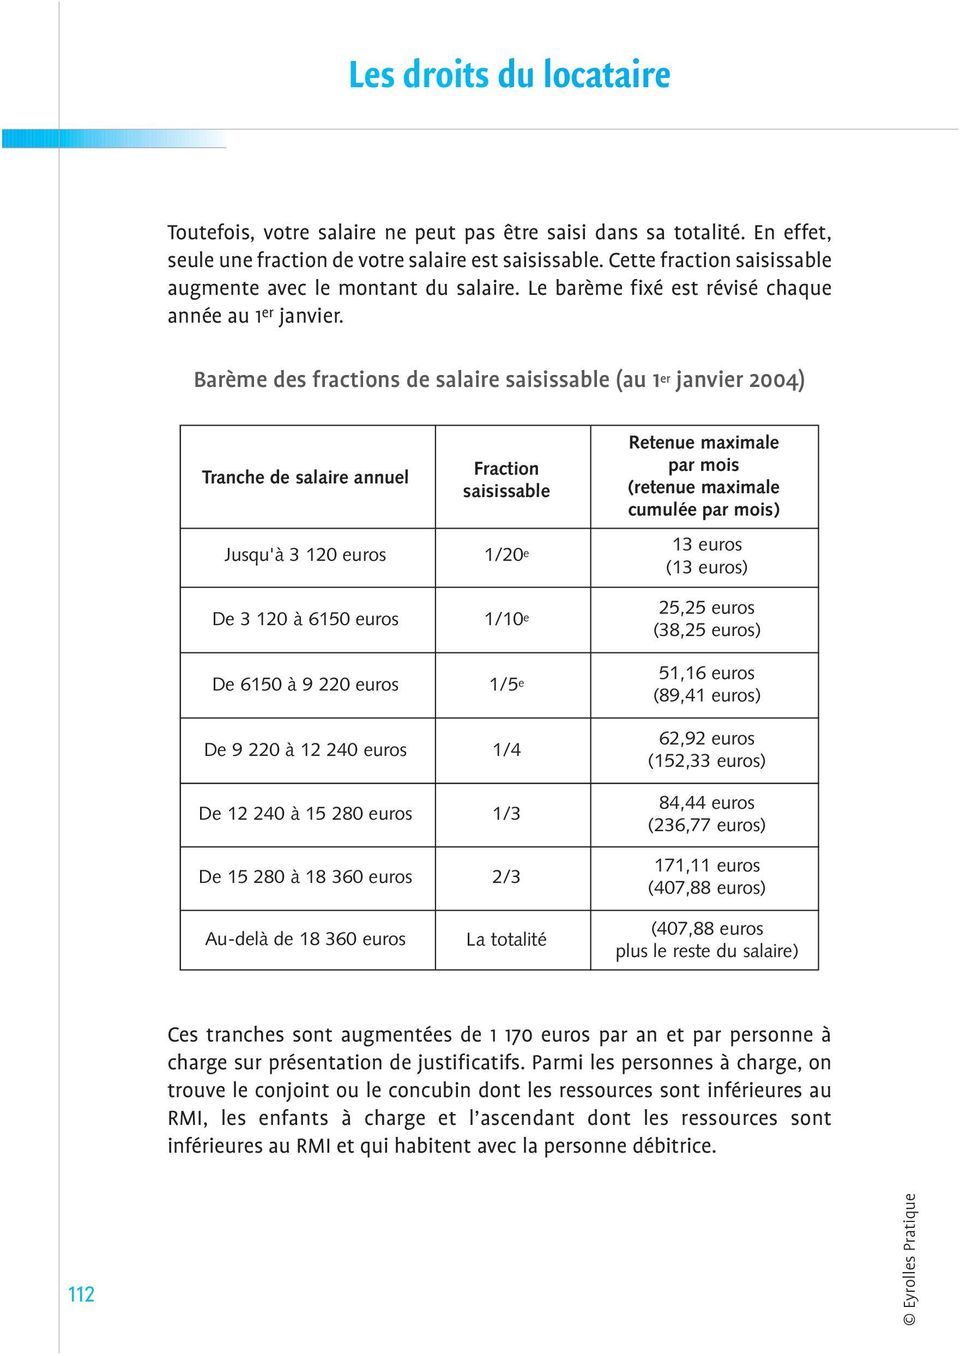 Barème des fractions de salaire saisissable (au 1 er janvier 2004) Tranche de salaire annuel Fraction saisissable Retenue maximale par mois (retenue maximale cumulée par mois) Jusqu'à 3 120 euros